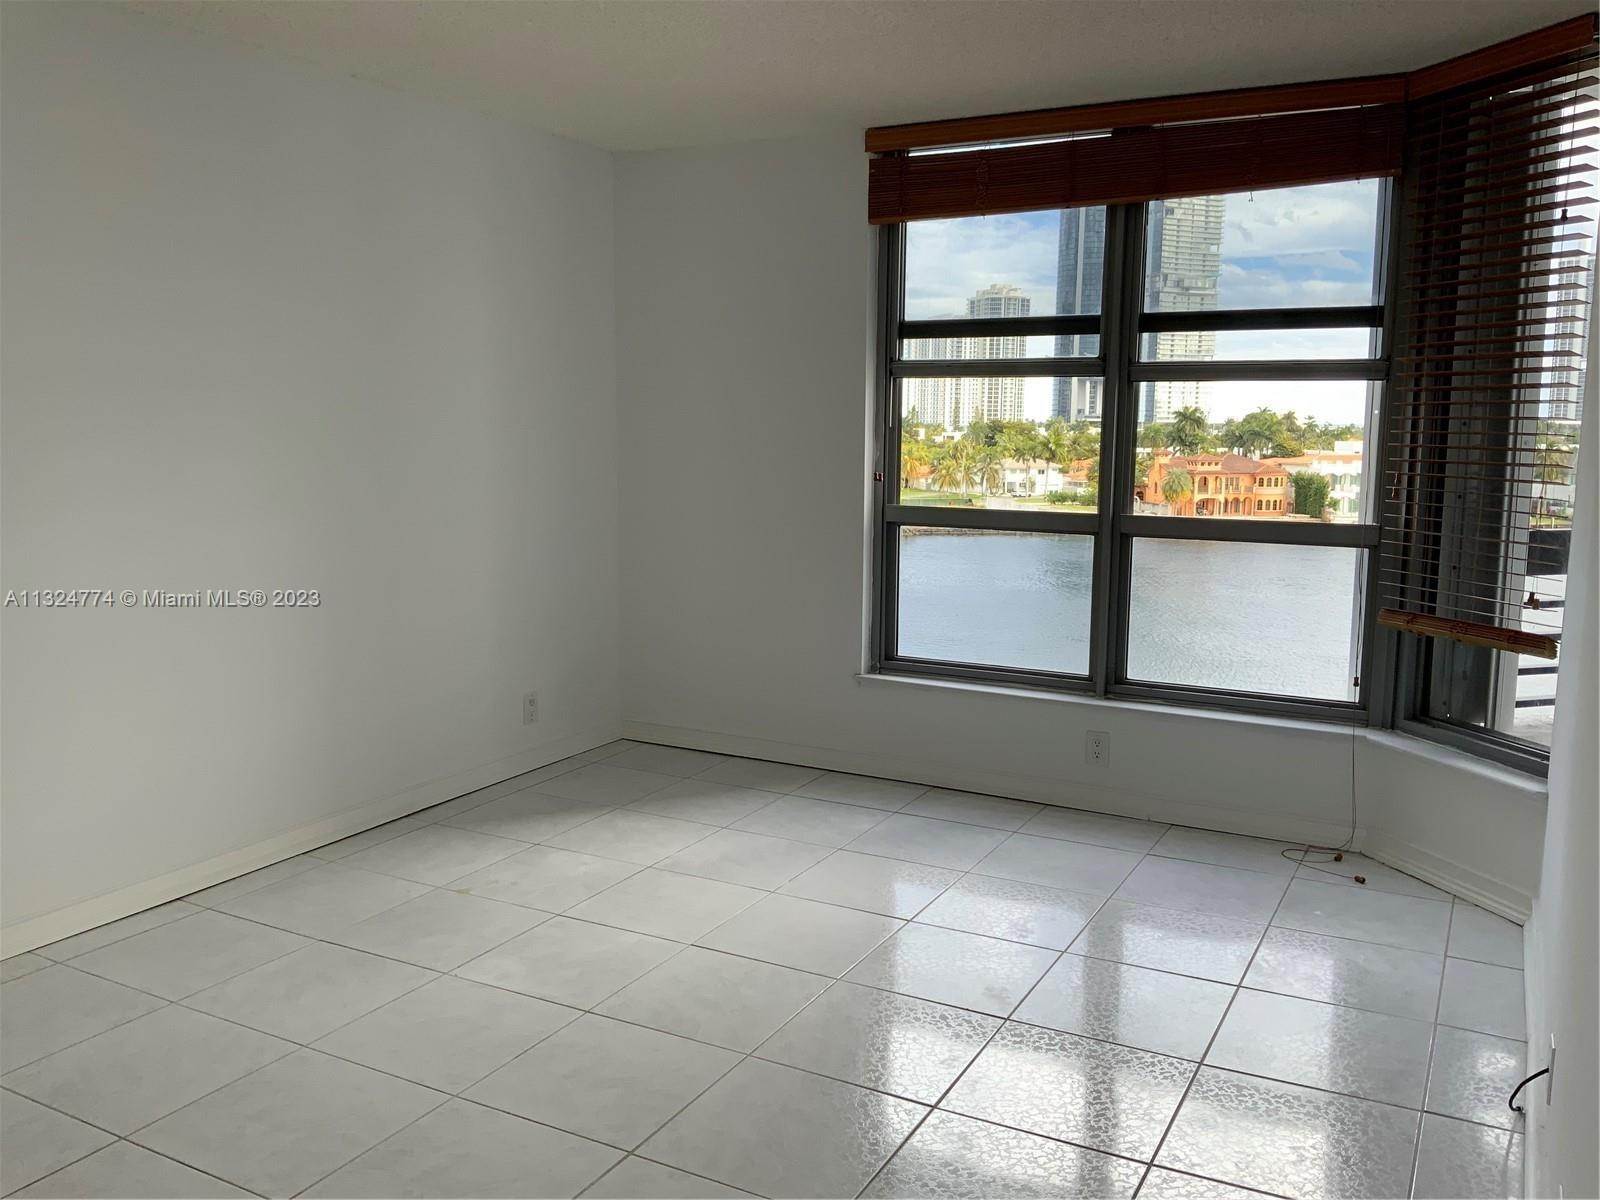 10. Condominium for Sale at Aventura, FL 33180